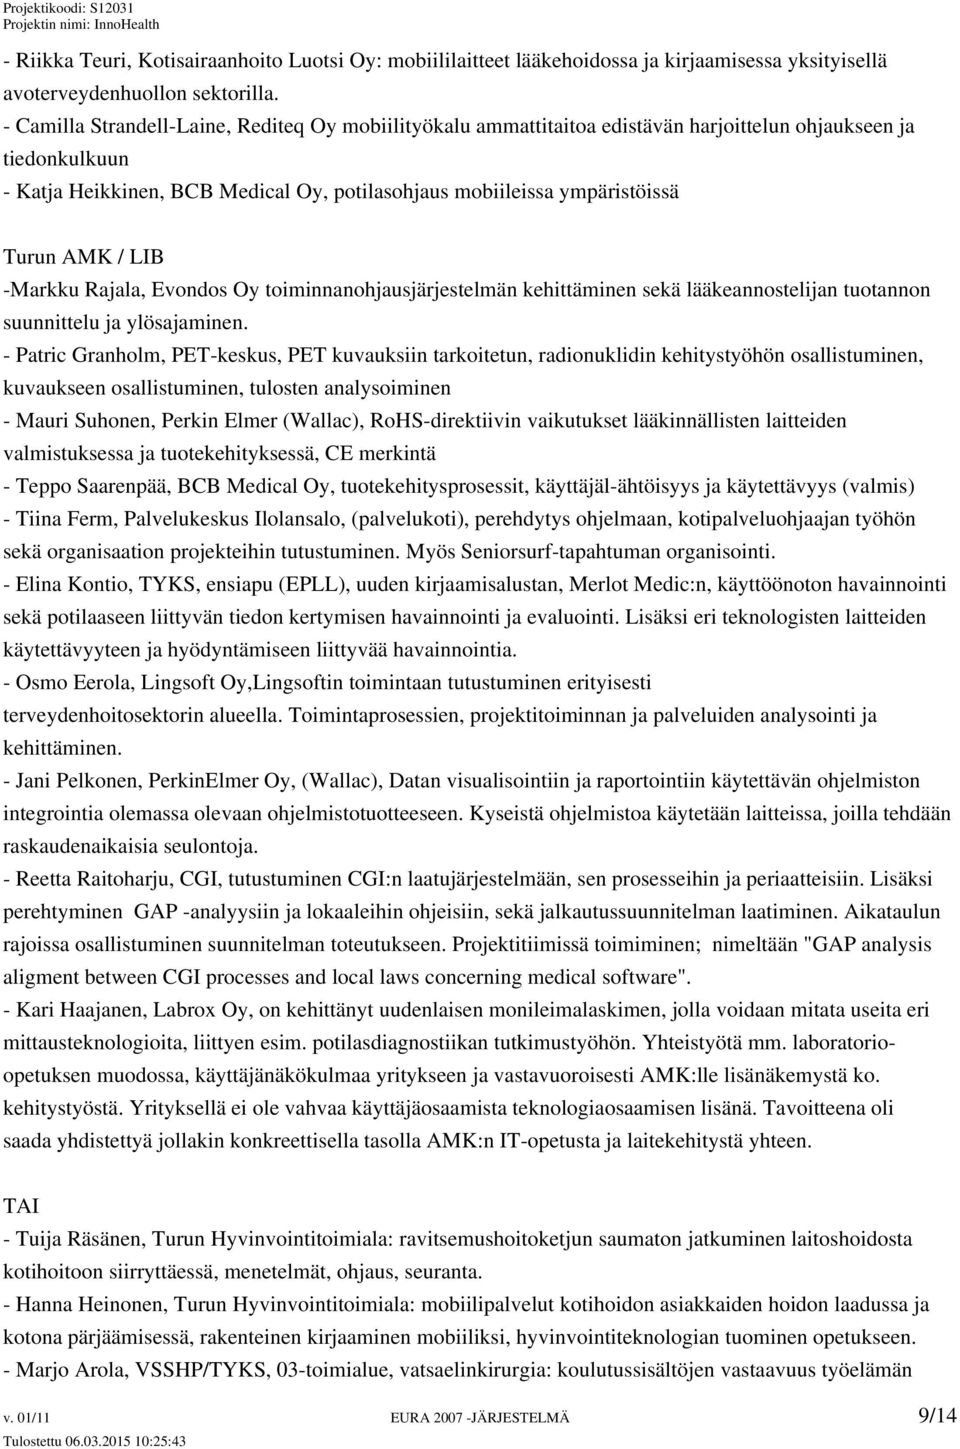 AMK / LIB -Markku Rajala, Evondos Oy toiminnanohjausjärjestelmän kehittäminen sekä lääkeannostelijan tuotannon suunnittelu ja ylösajaminen.